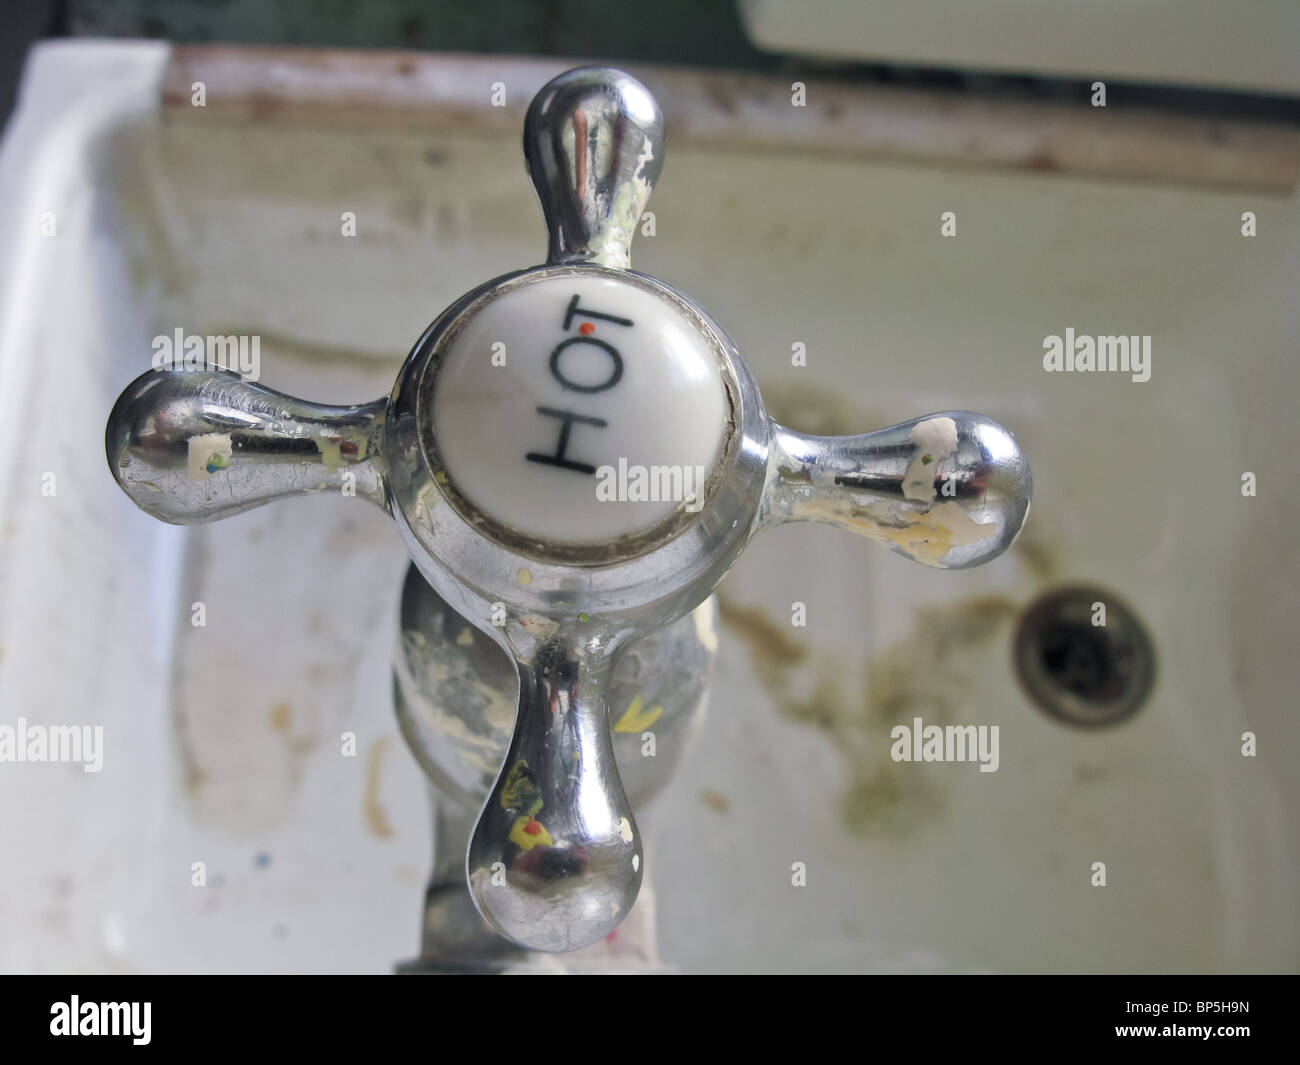 Chrom heißem Wasser über einen tiefen Butlers Waschbecken mit hartem Wasser Ablagerungen Kalkablagerungen auf Basis von schmutzigen ablassen Bereich gesehen Stockfoto